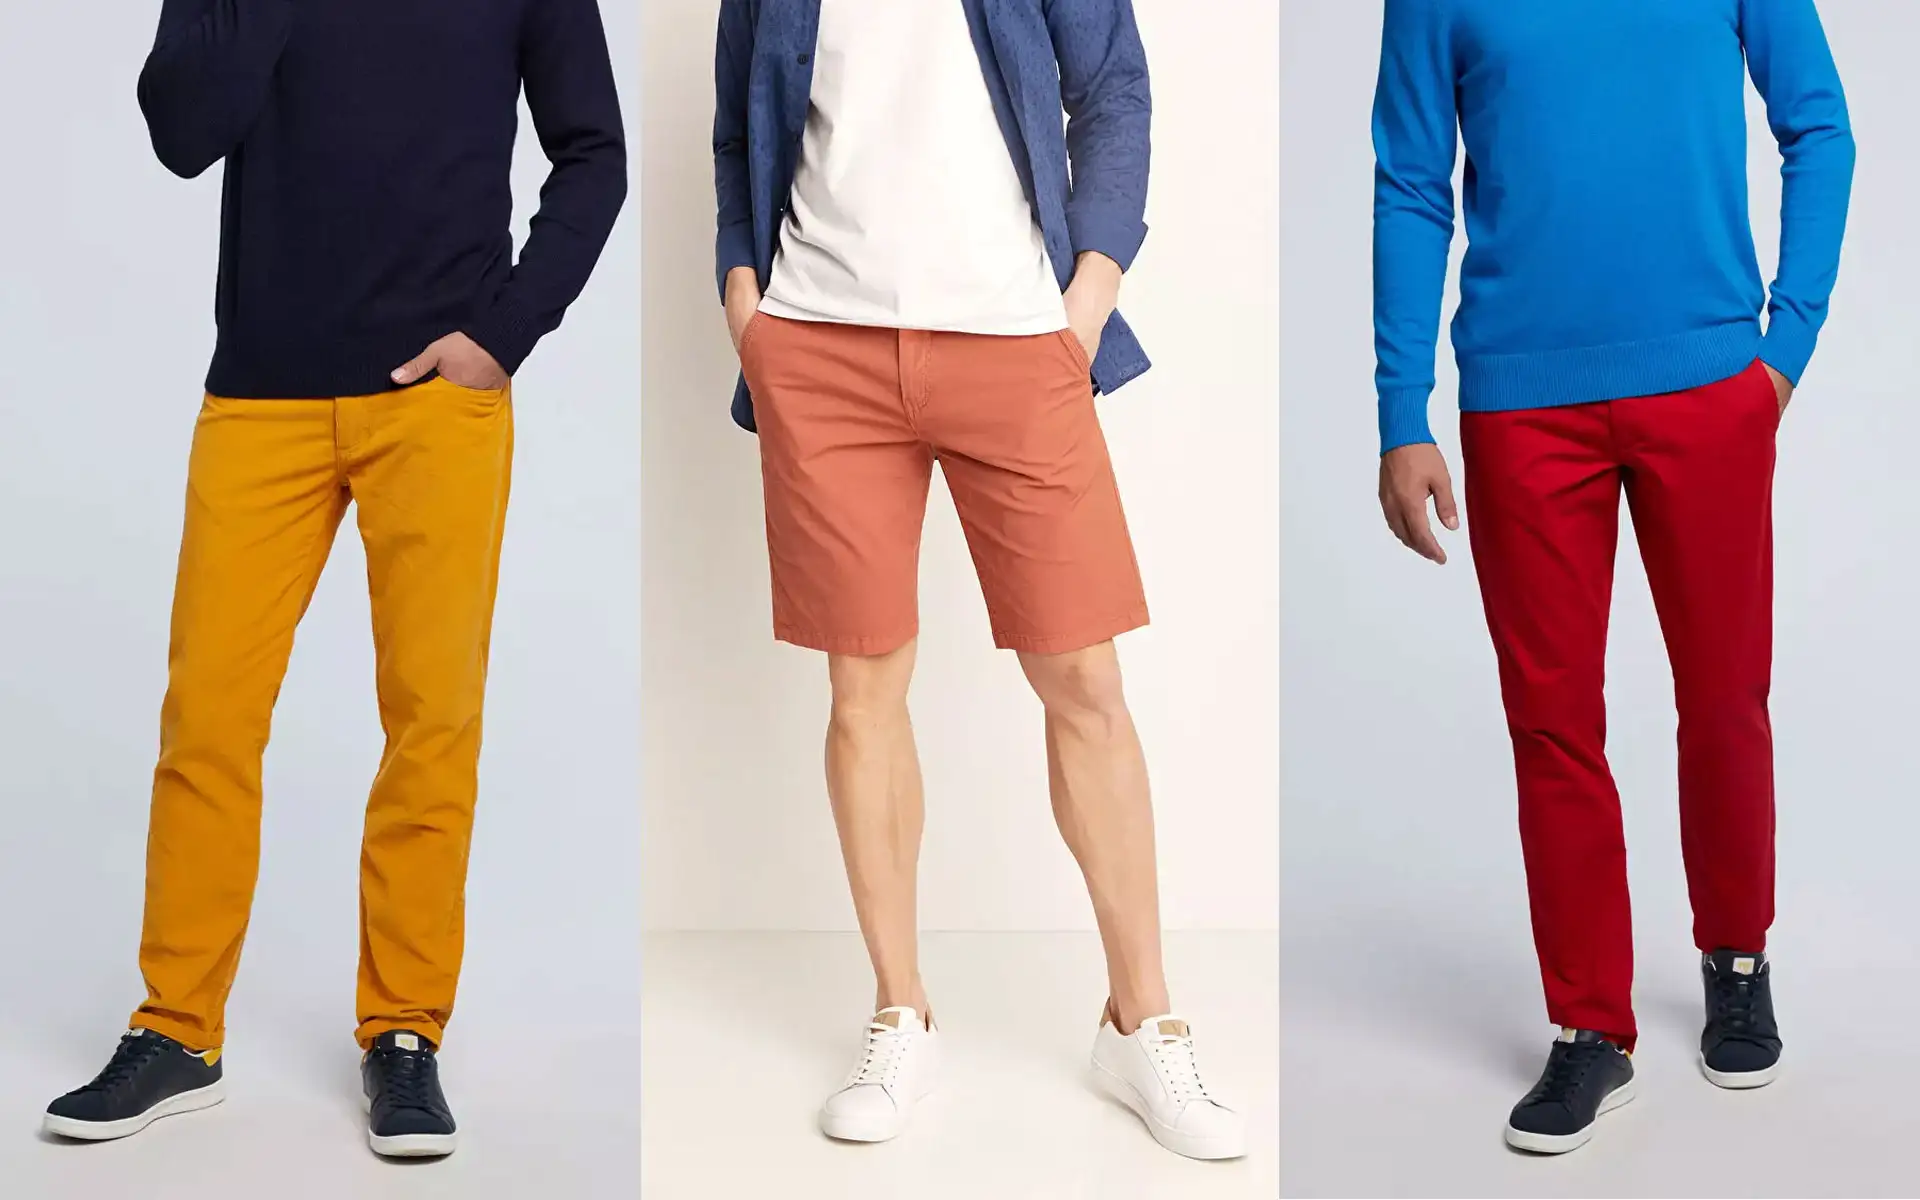 Kolorowe spodnie – z czym je dobrze łączyć?